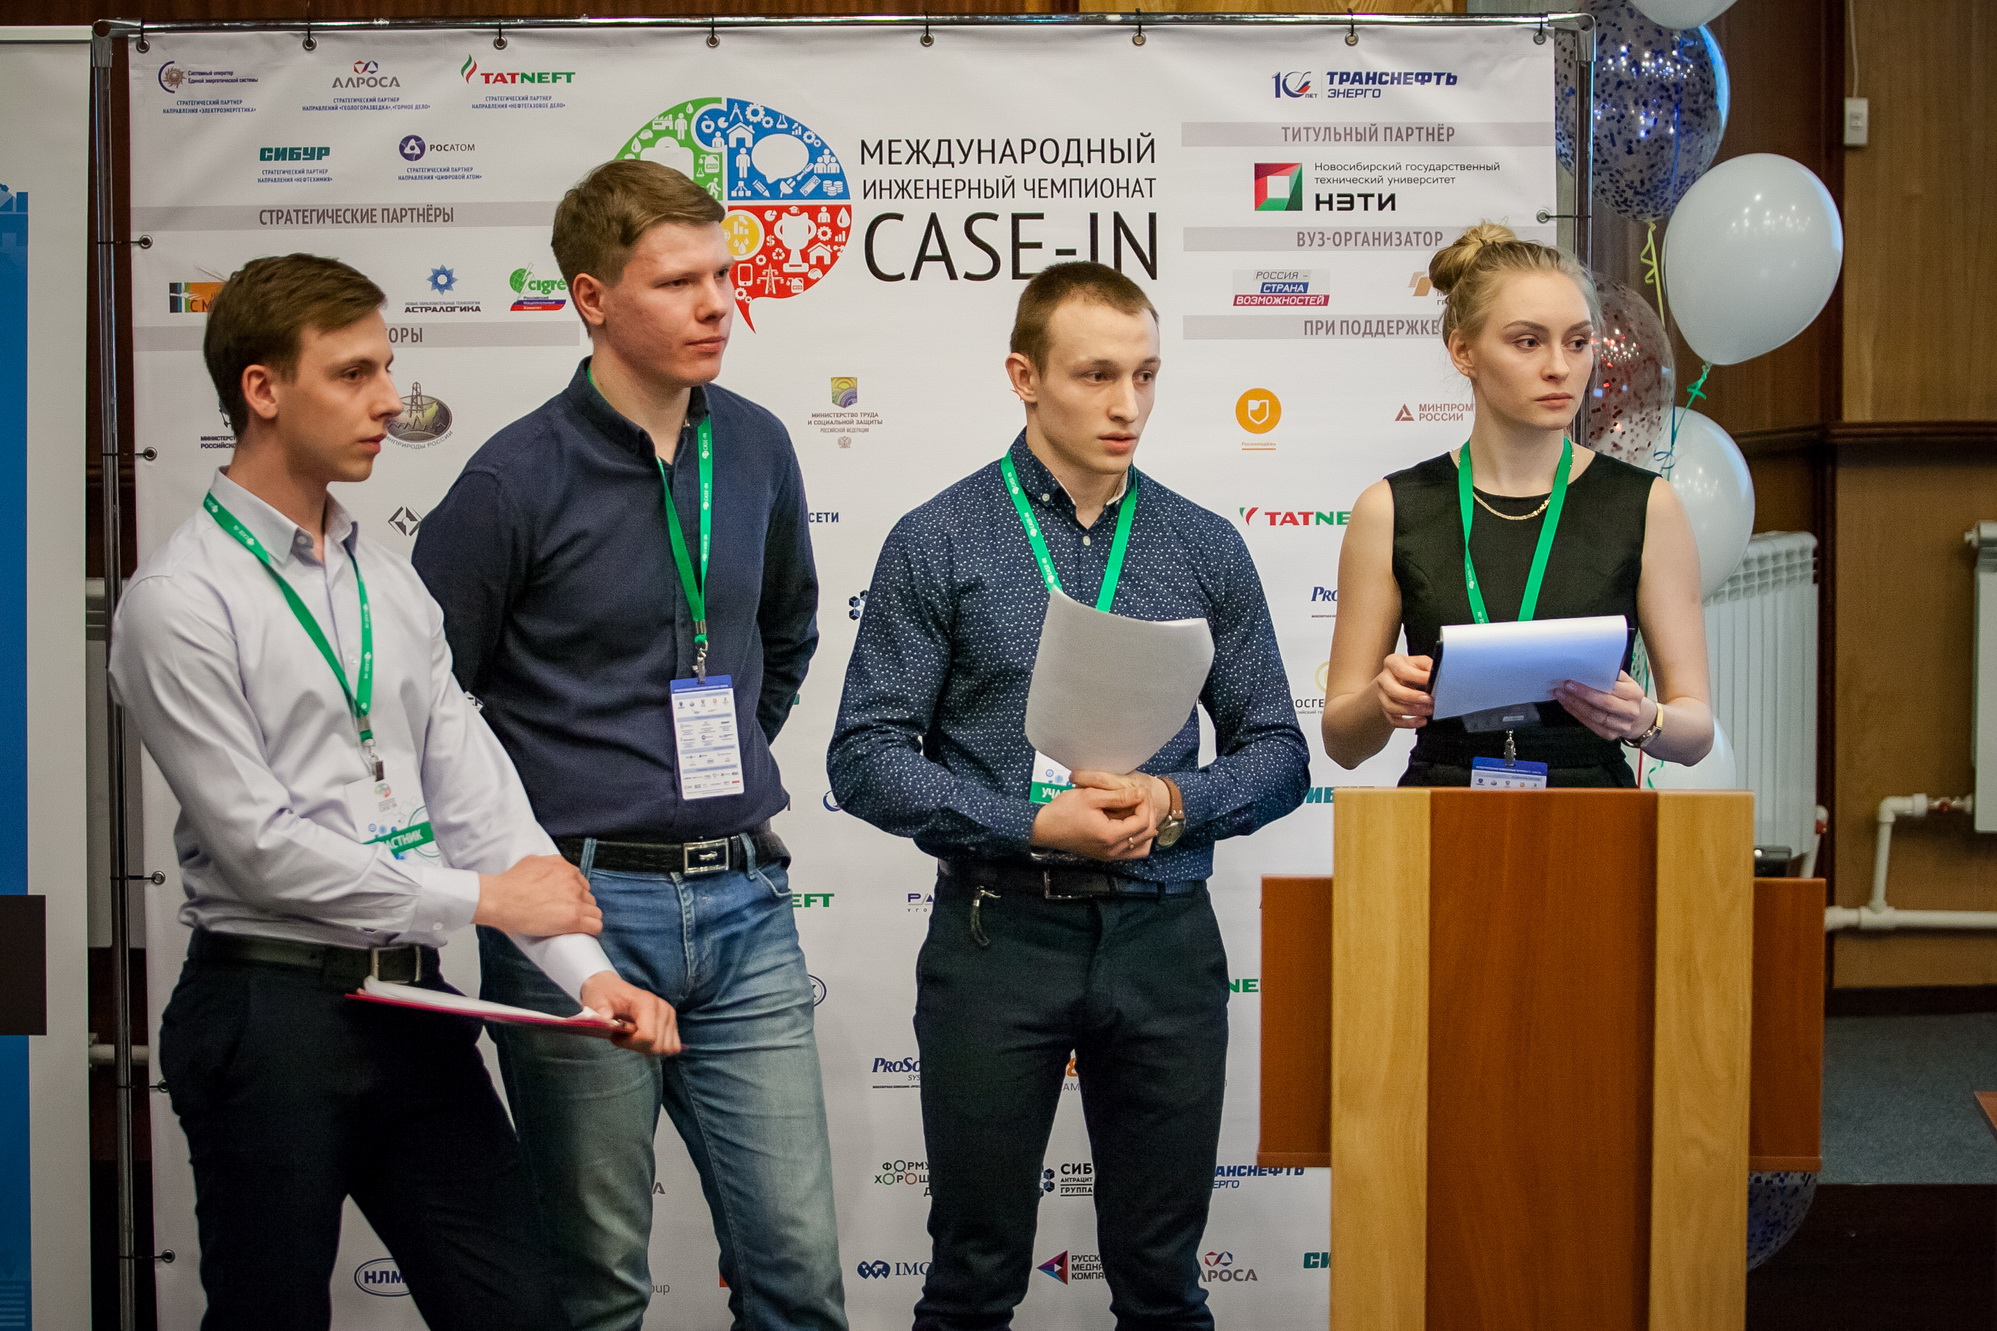 Международный инженерный чемпионат Case-In, фотография: П. Казак